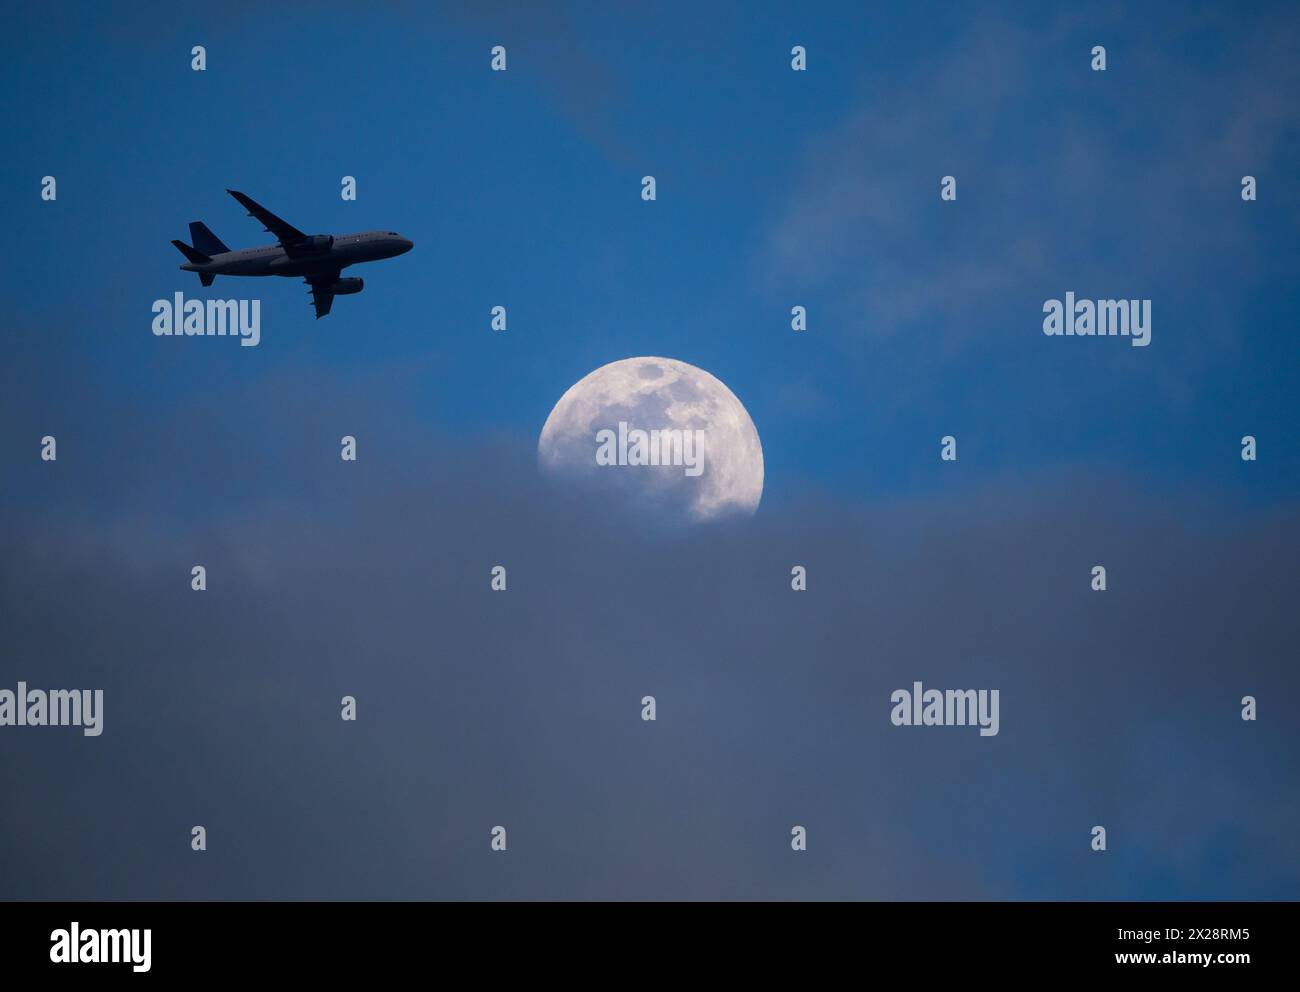 Un aereo di linea commerciale in avvicinamento finale a un aeroporto passa sopra una luna piena parzialmente oscurata da nuvole basse al tramonto. Foto Stock